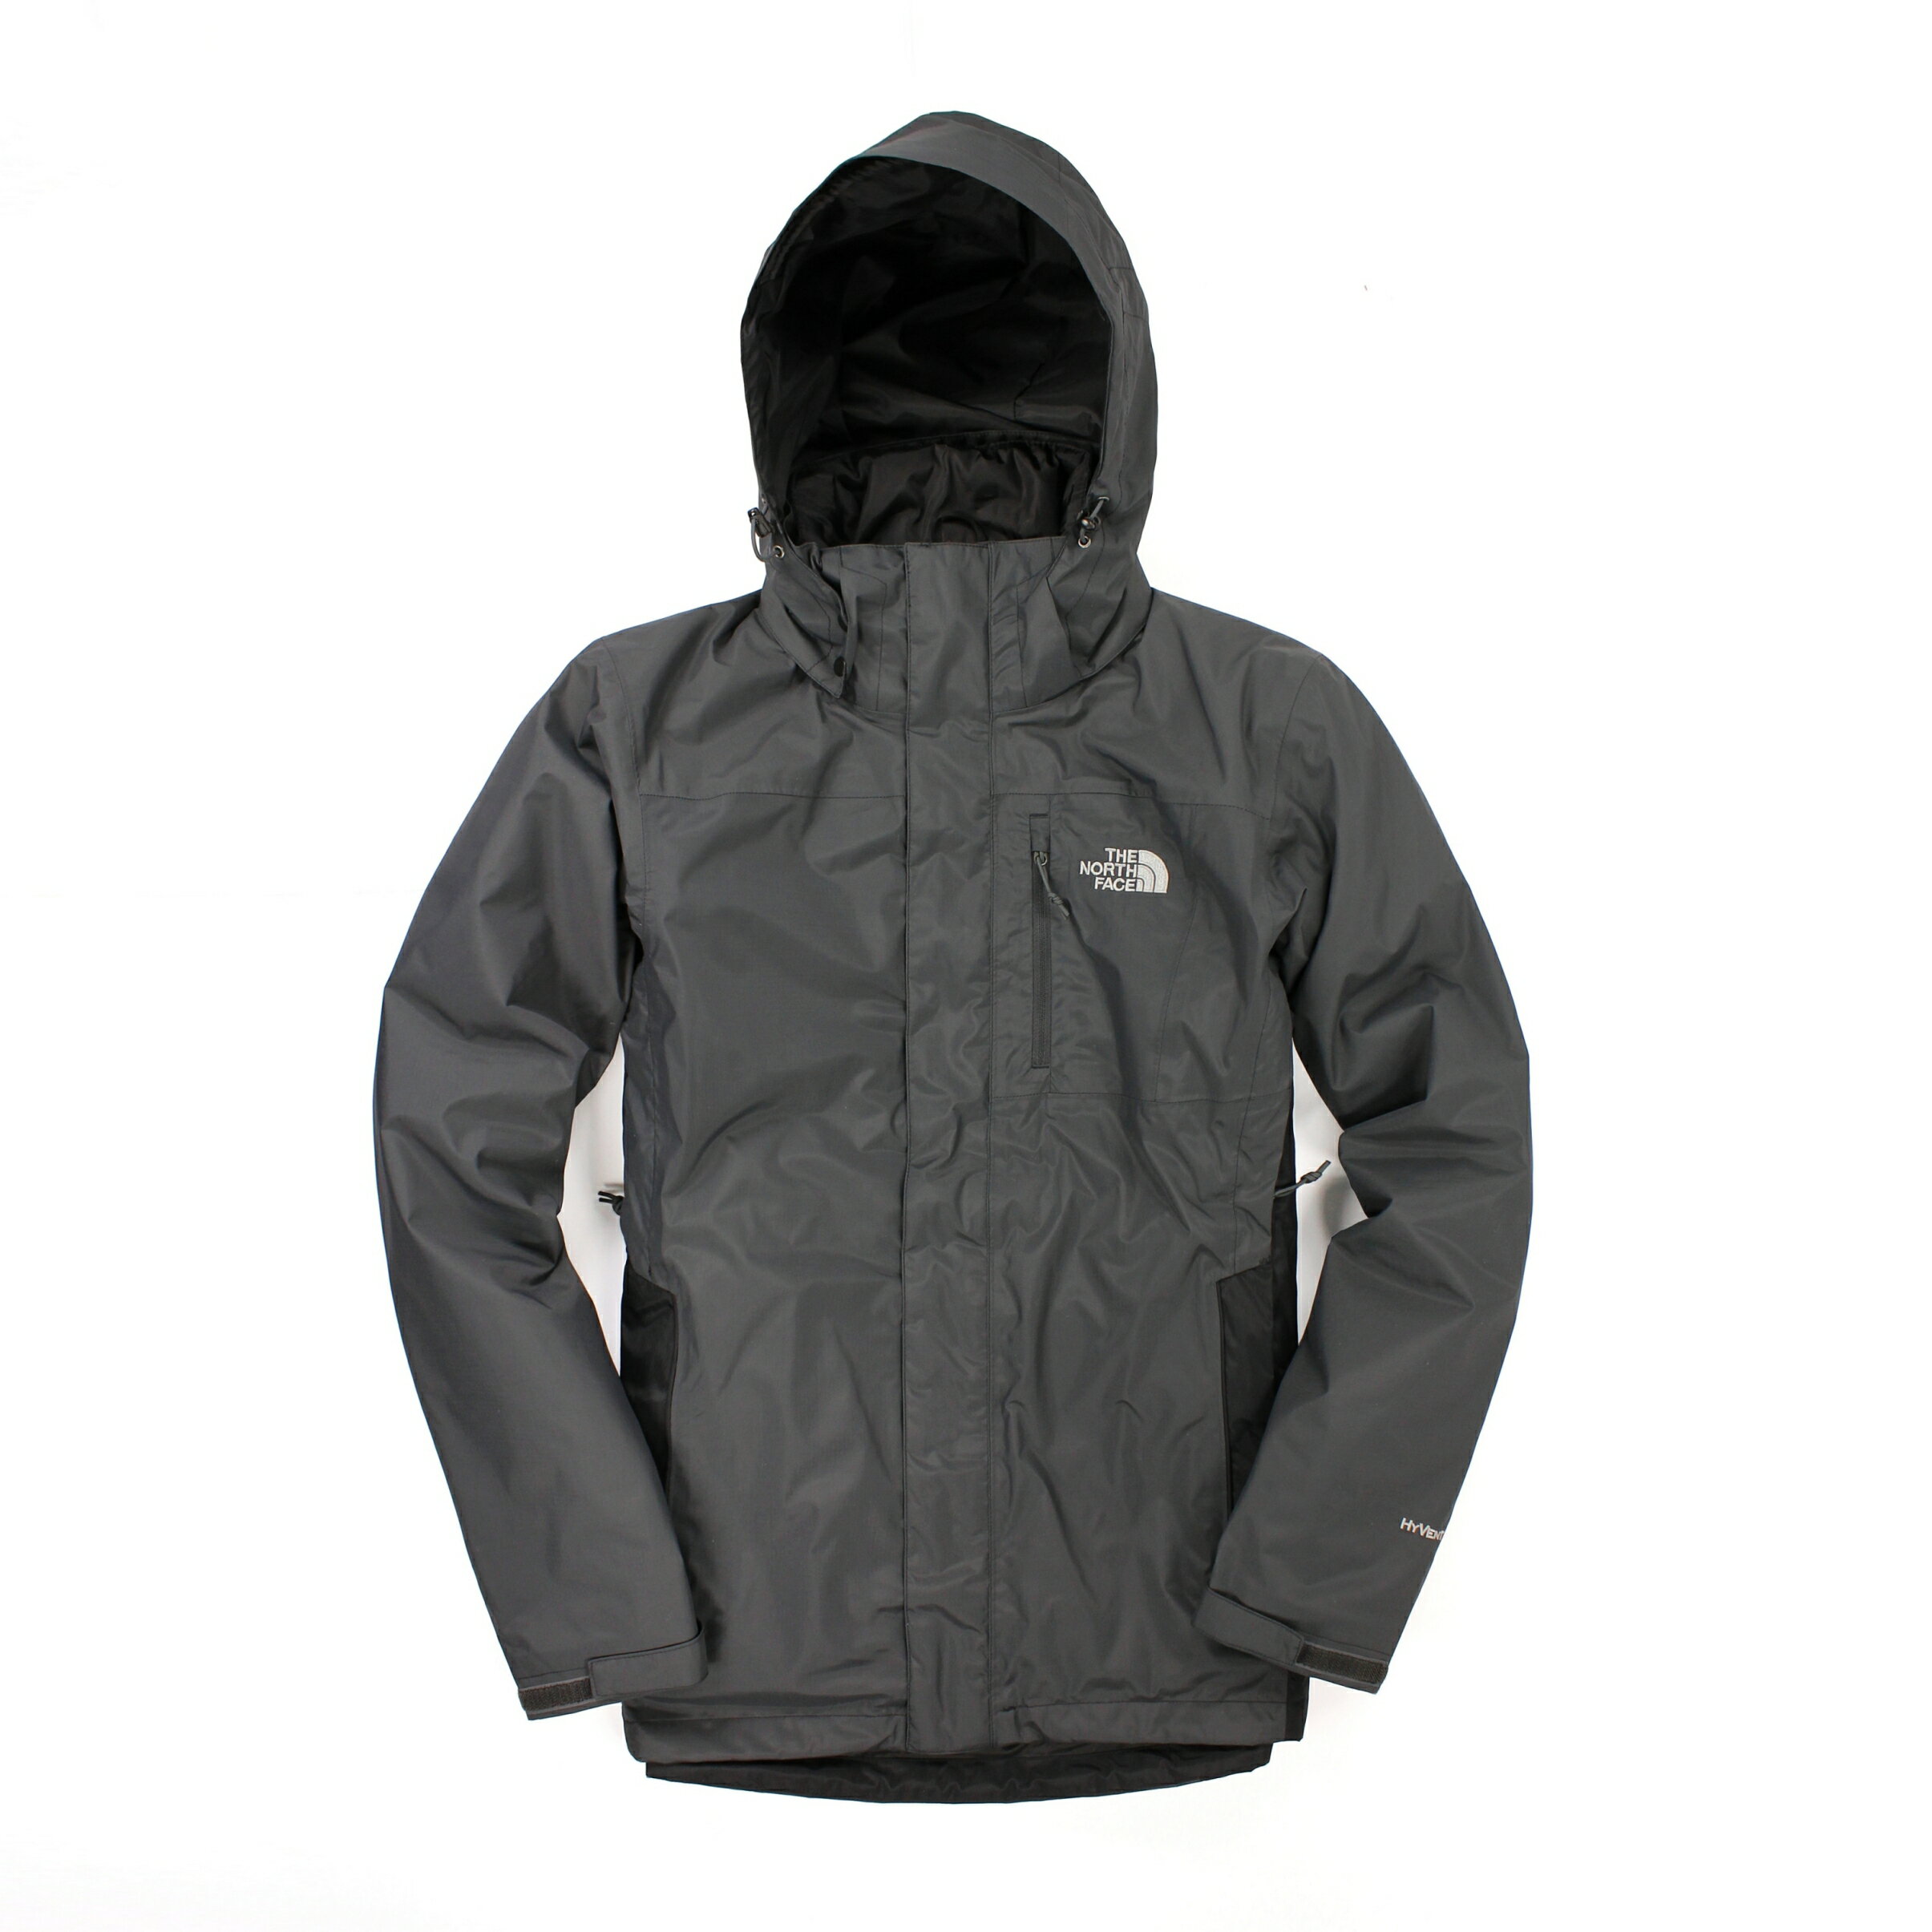 美國百分百【全新真品】The North Face 外套 TNF 連帽外套 夾克 兩件式 鋪棉 Hyvent 灰 S 男衣 B965